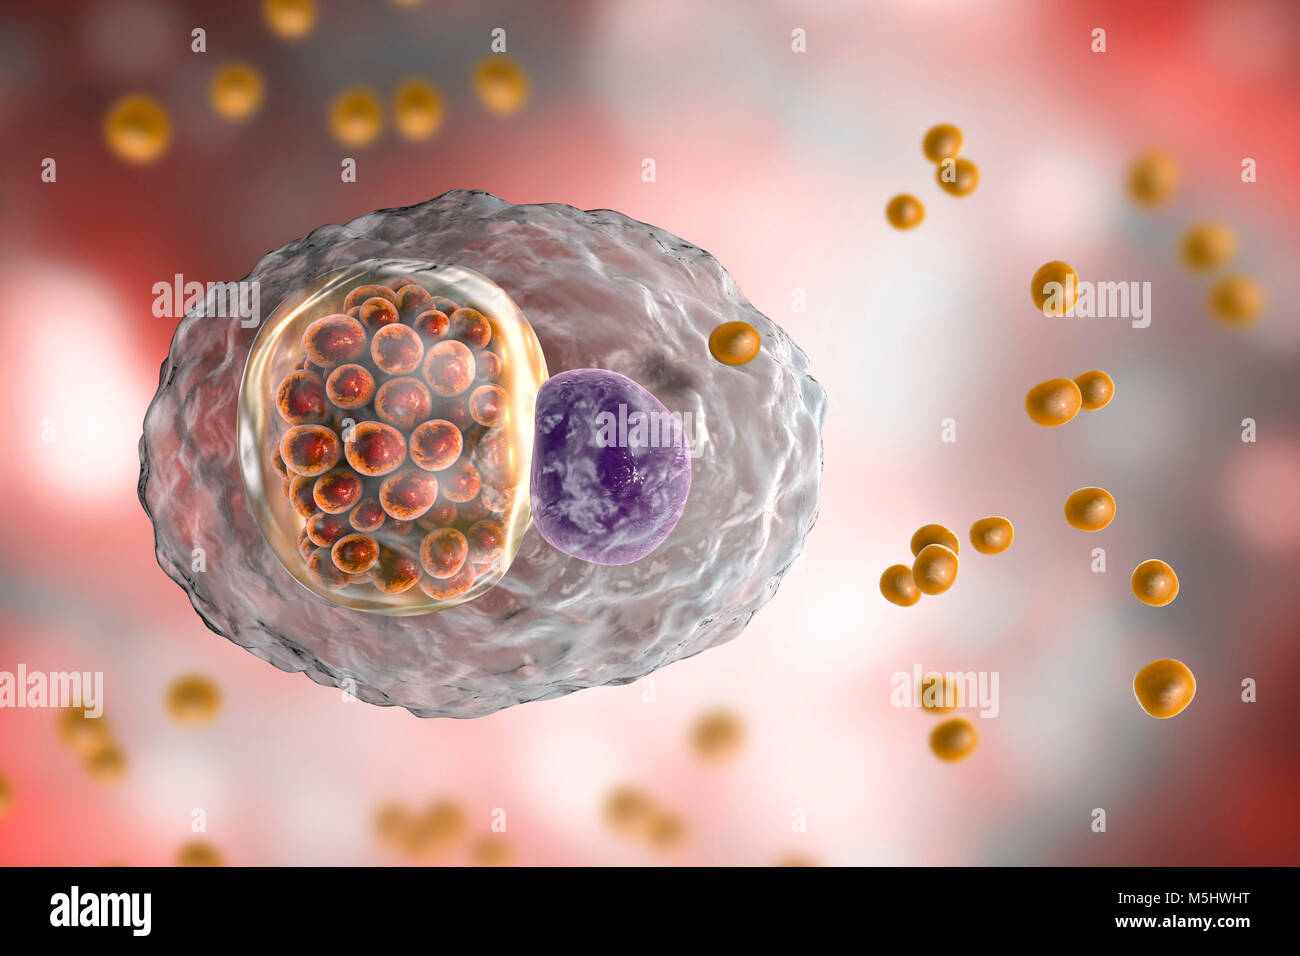 Chlamydia psittaci batteri. Computer illustrazione che mostra due stadi del ciclo di vita di Chlamydia: corpi elementari (non extracellulare moltiplicando in fase infettiva, piccole sfere di colore arancione al di fuori della cella) e un composto di inclusione di un gruppo di chlamydia reticolano corpi (intracellulare dello stadio di moltiplicazione, arancioni piccole sfere all'interno del cel) nelle vicinanze del nucleo (viola) di una cellula. Le specie di Chlamydia sono batteri atipici per il fatto che essi sono obbligherà parassiti intracellulari, di vivere e di riprodurre soltanto all'interno delle cellule. Questa specie fa sì che l'aborto negli animali e nei polmoni della malattia negli esseri umani. Foto Stock